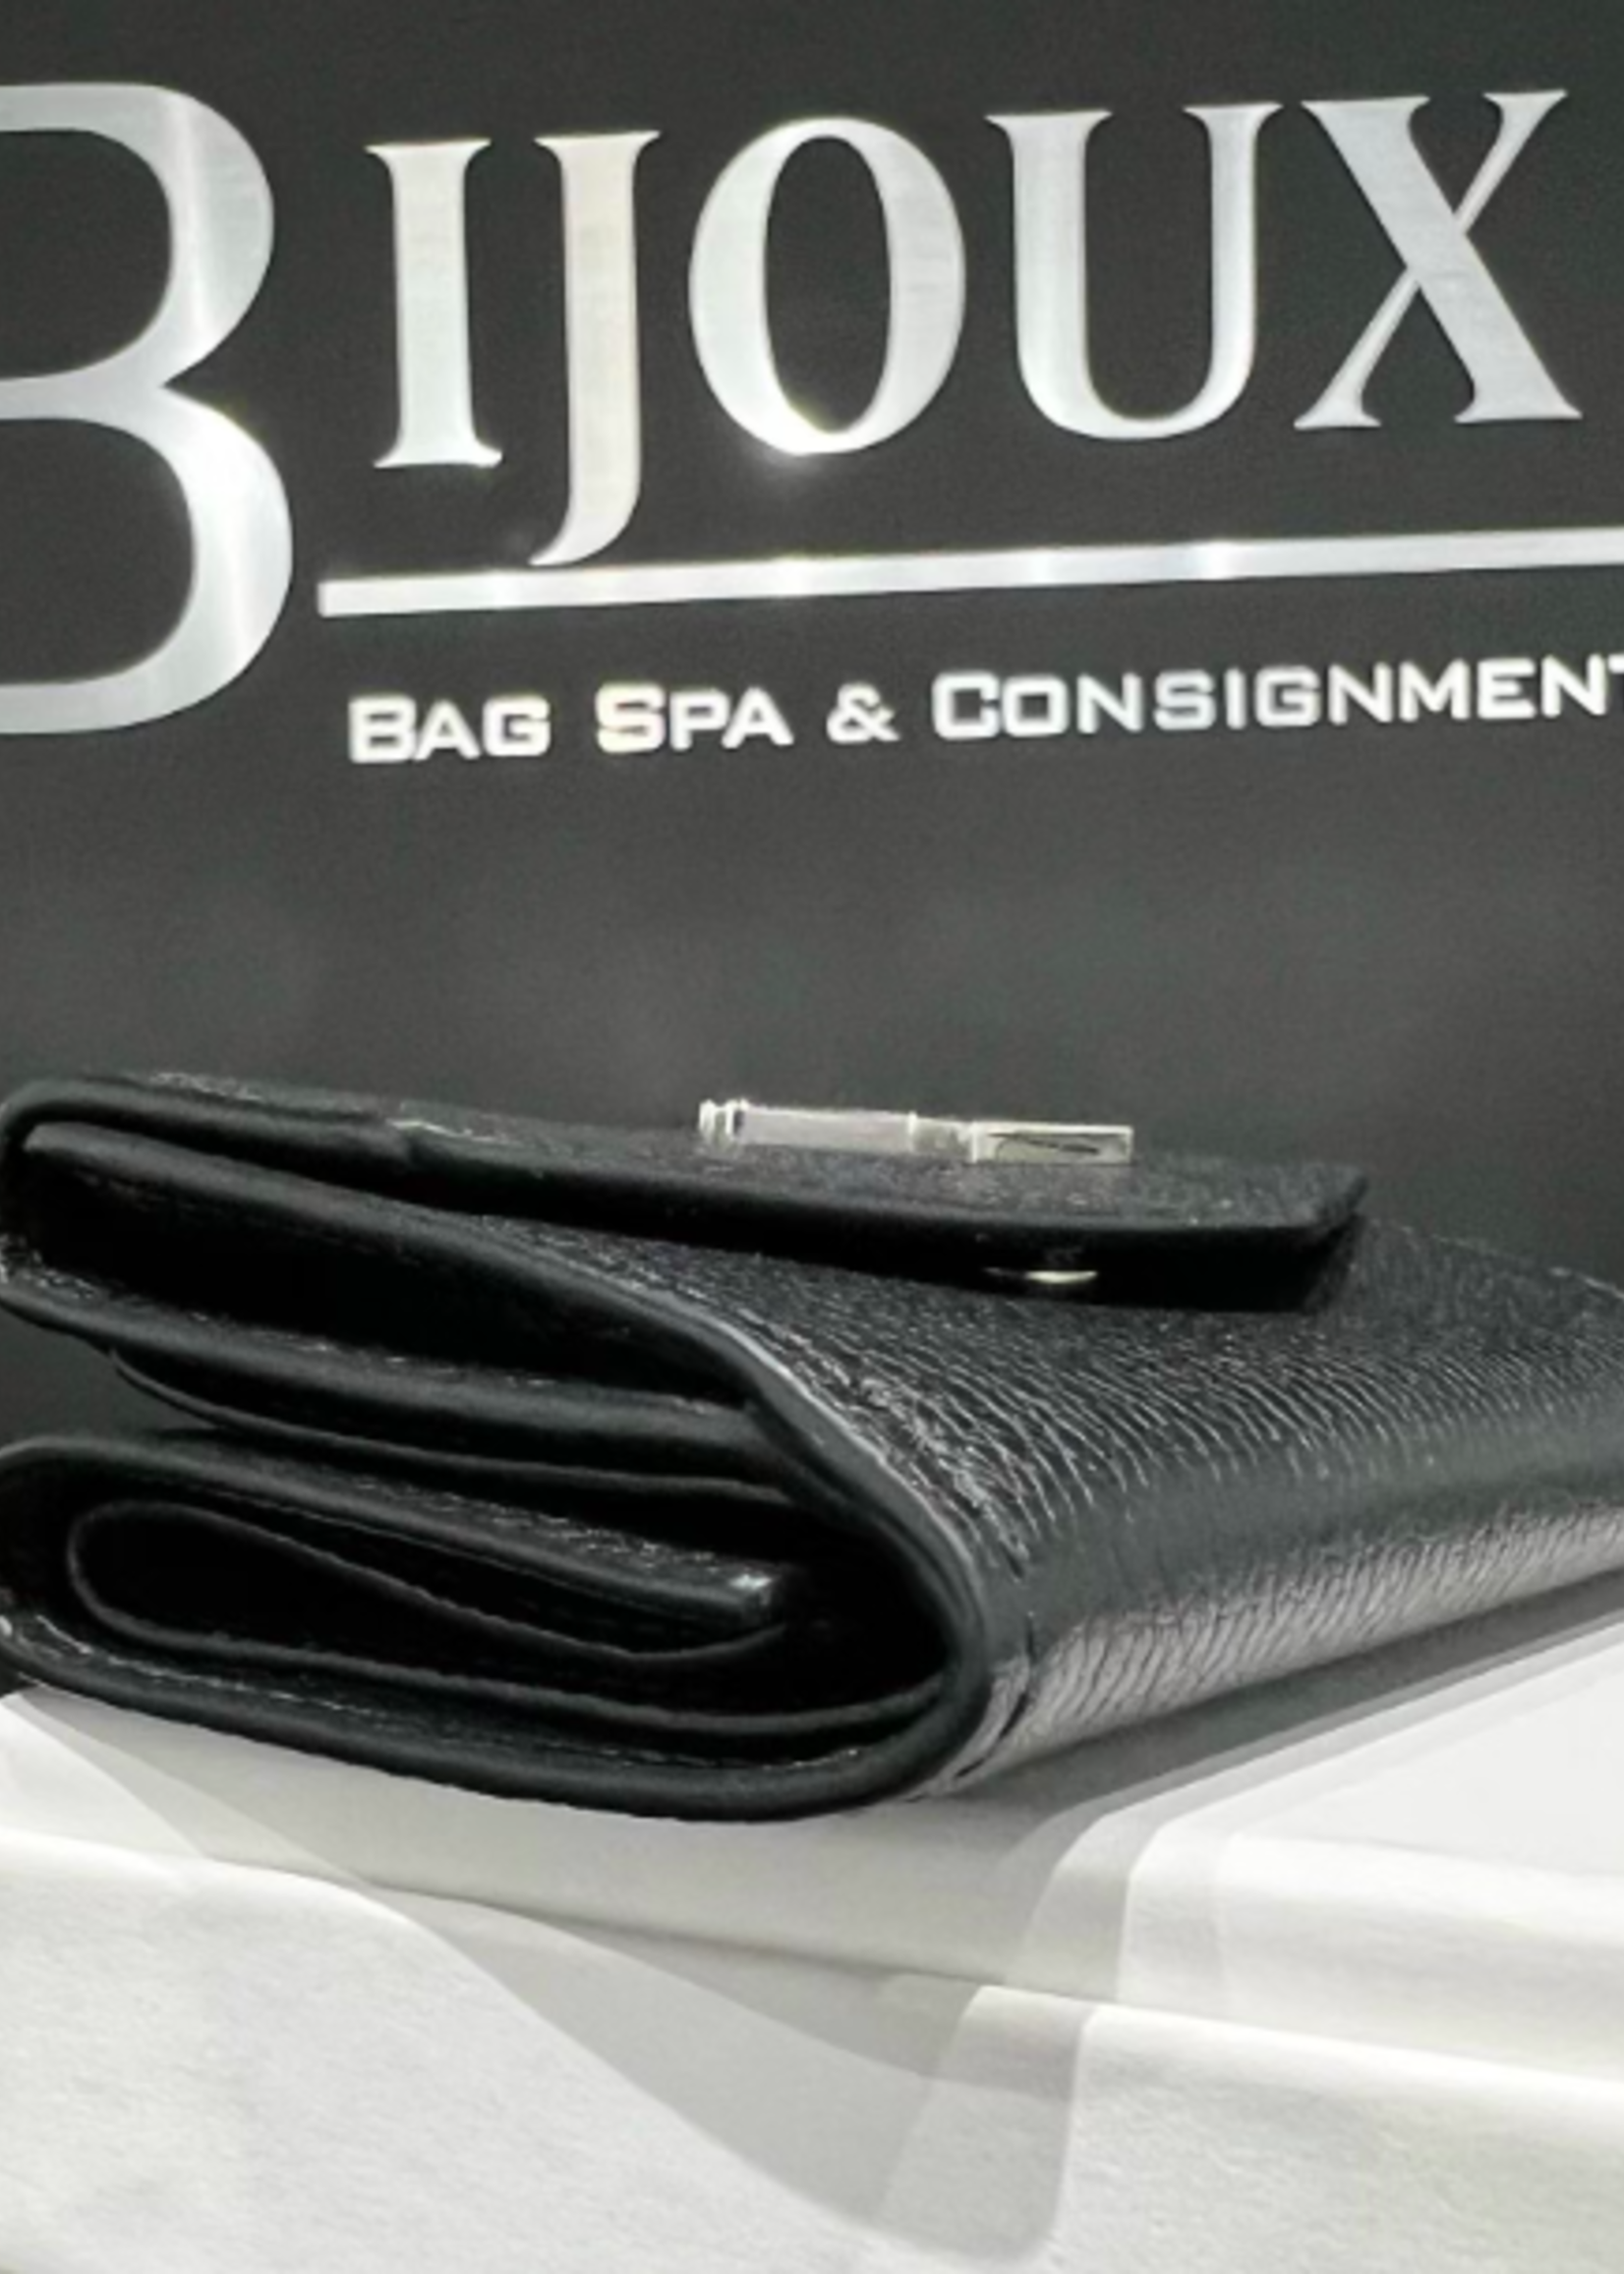 Louis Vuitton Lock Me Mini Wallet - Bijoux Bag Spa & Consignment